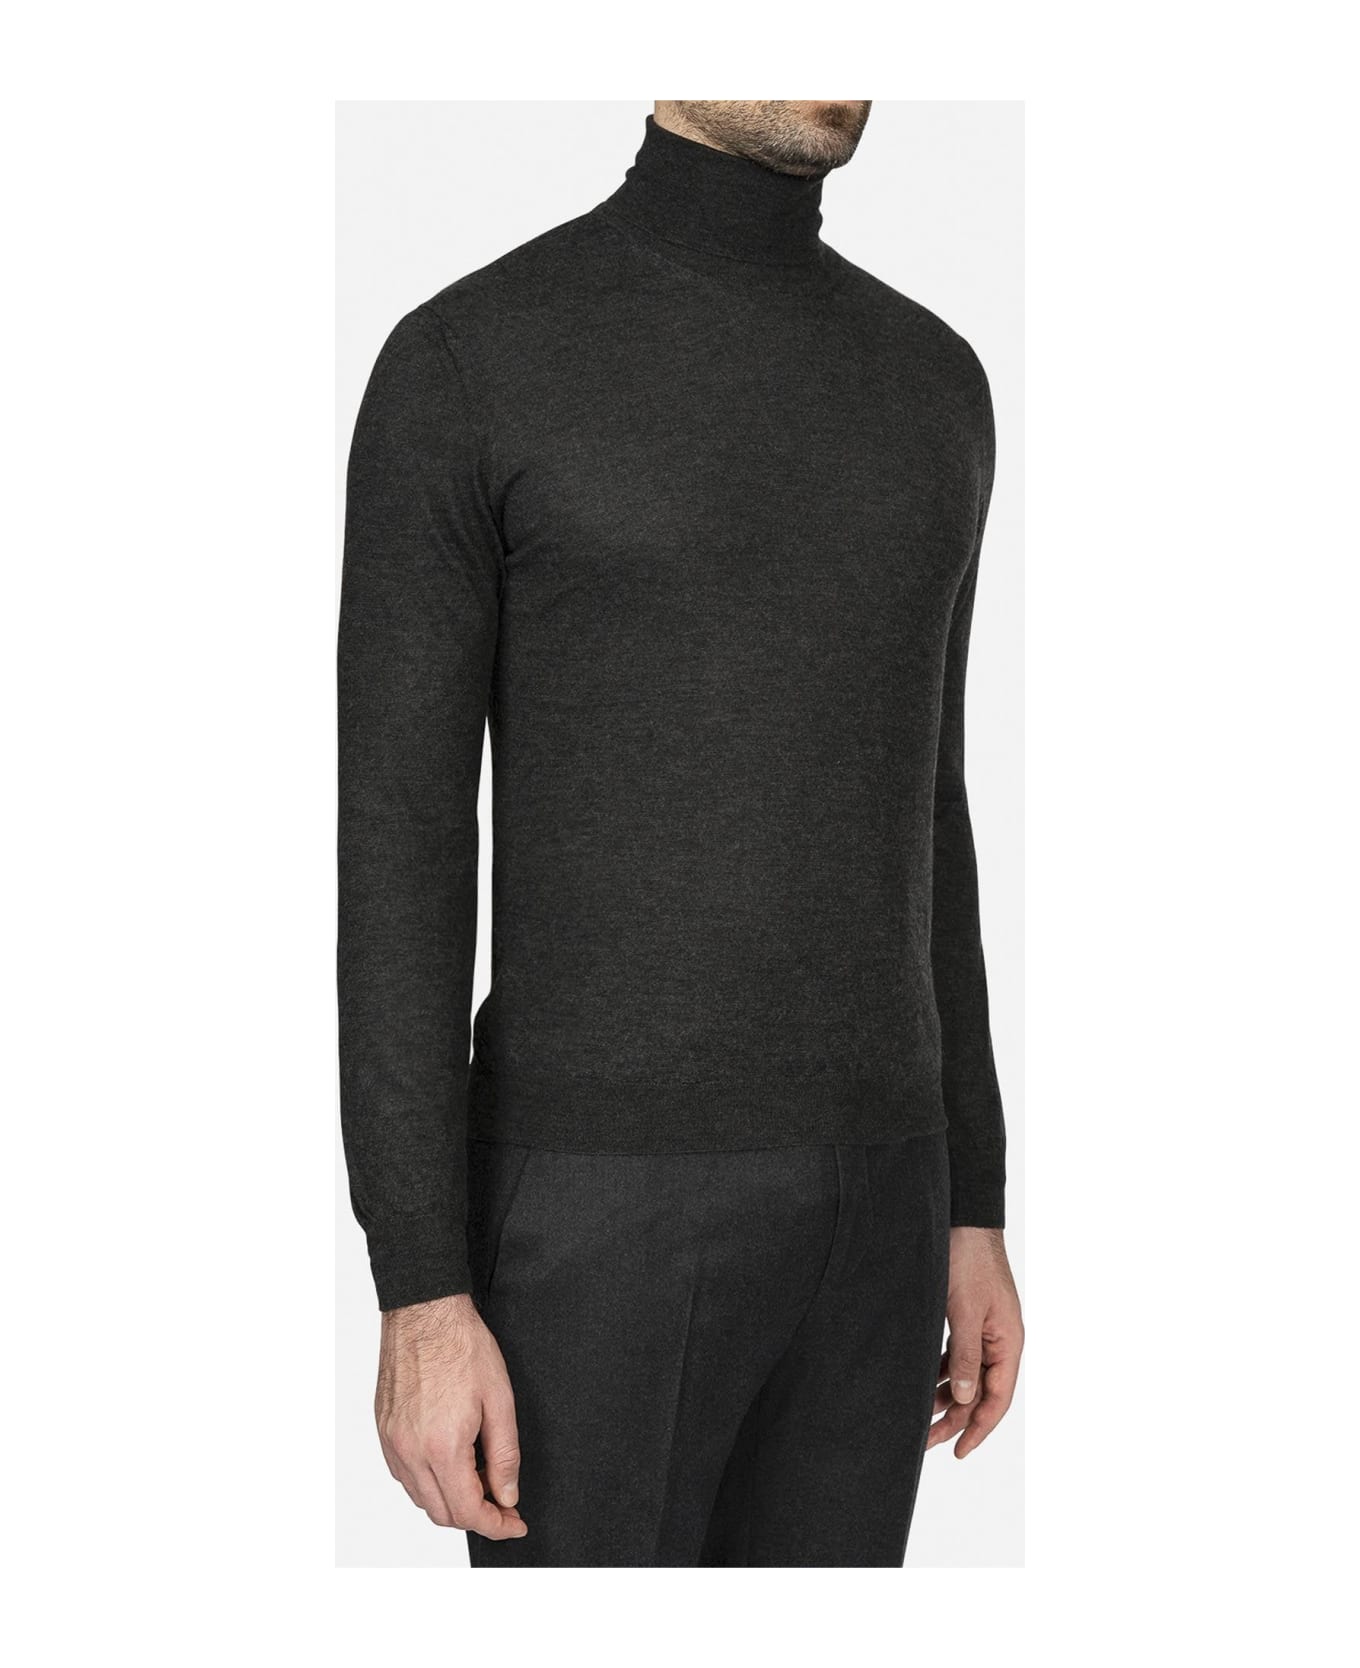 Larusmiani Turtleneck Sweater 'pullman' Sweater - DimGray ニットウェア